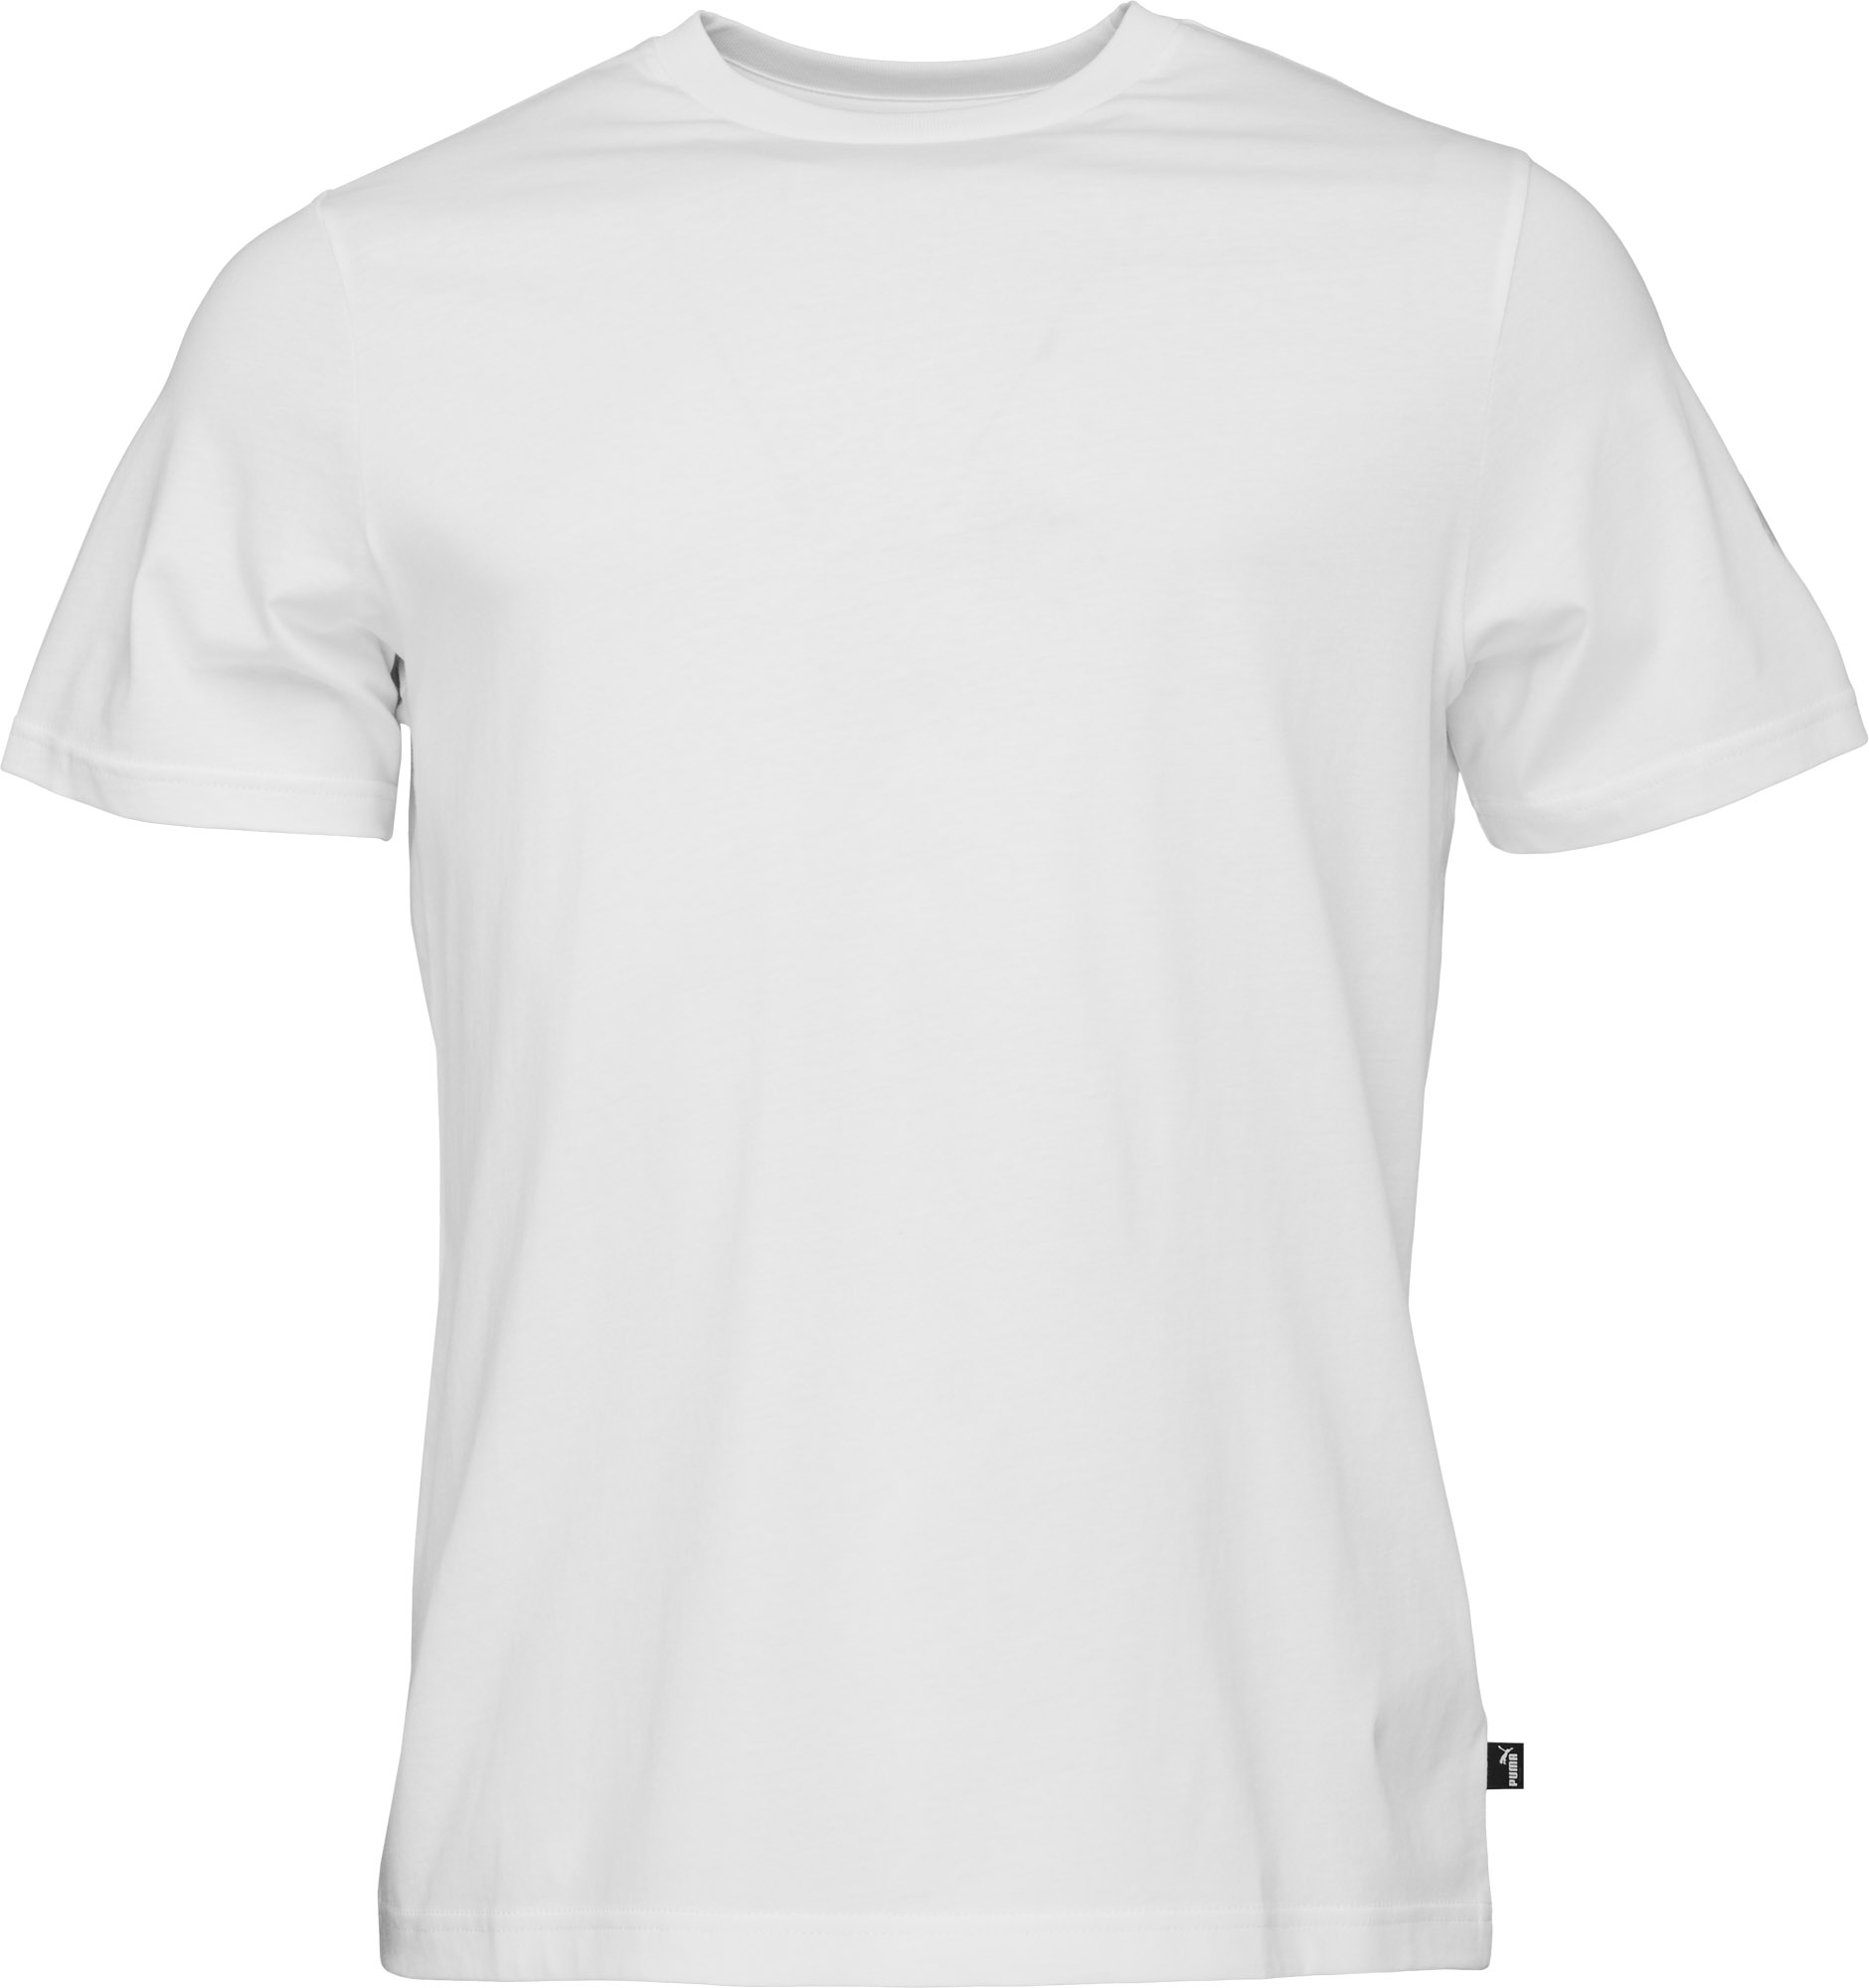 Men's football T-shirt